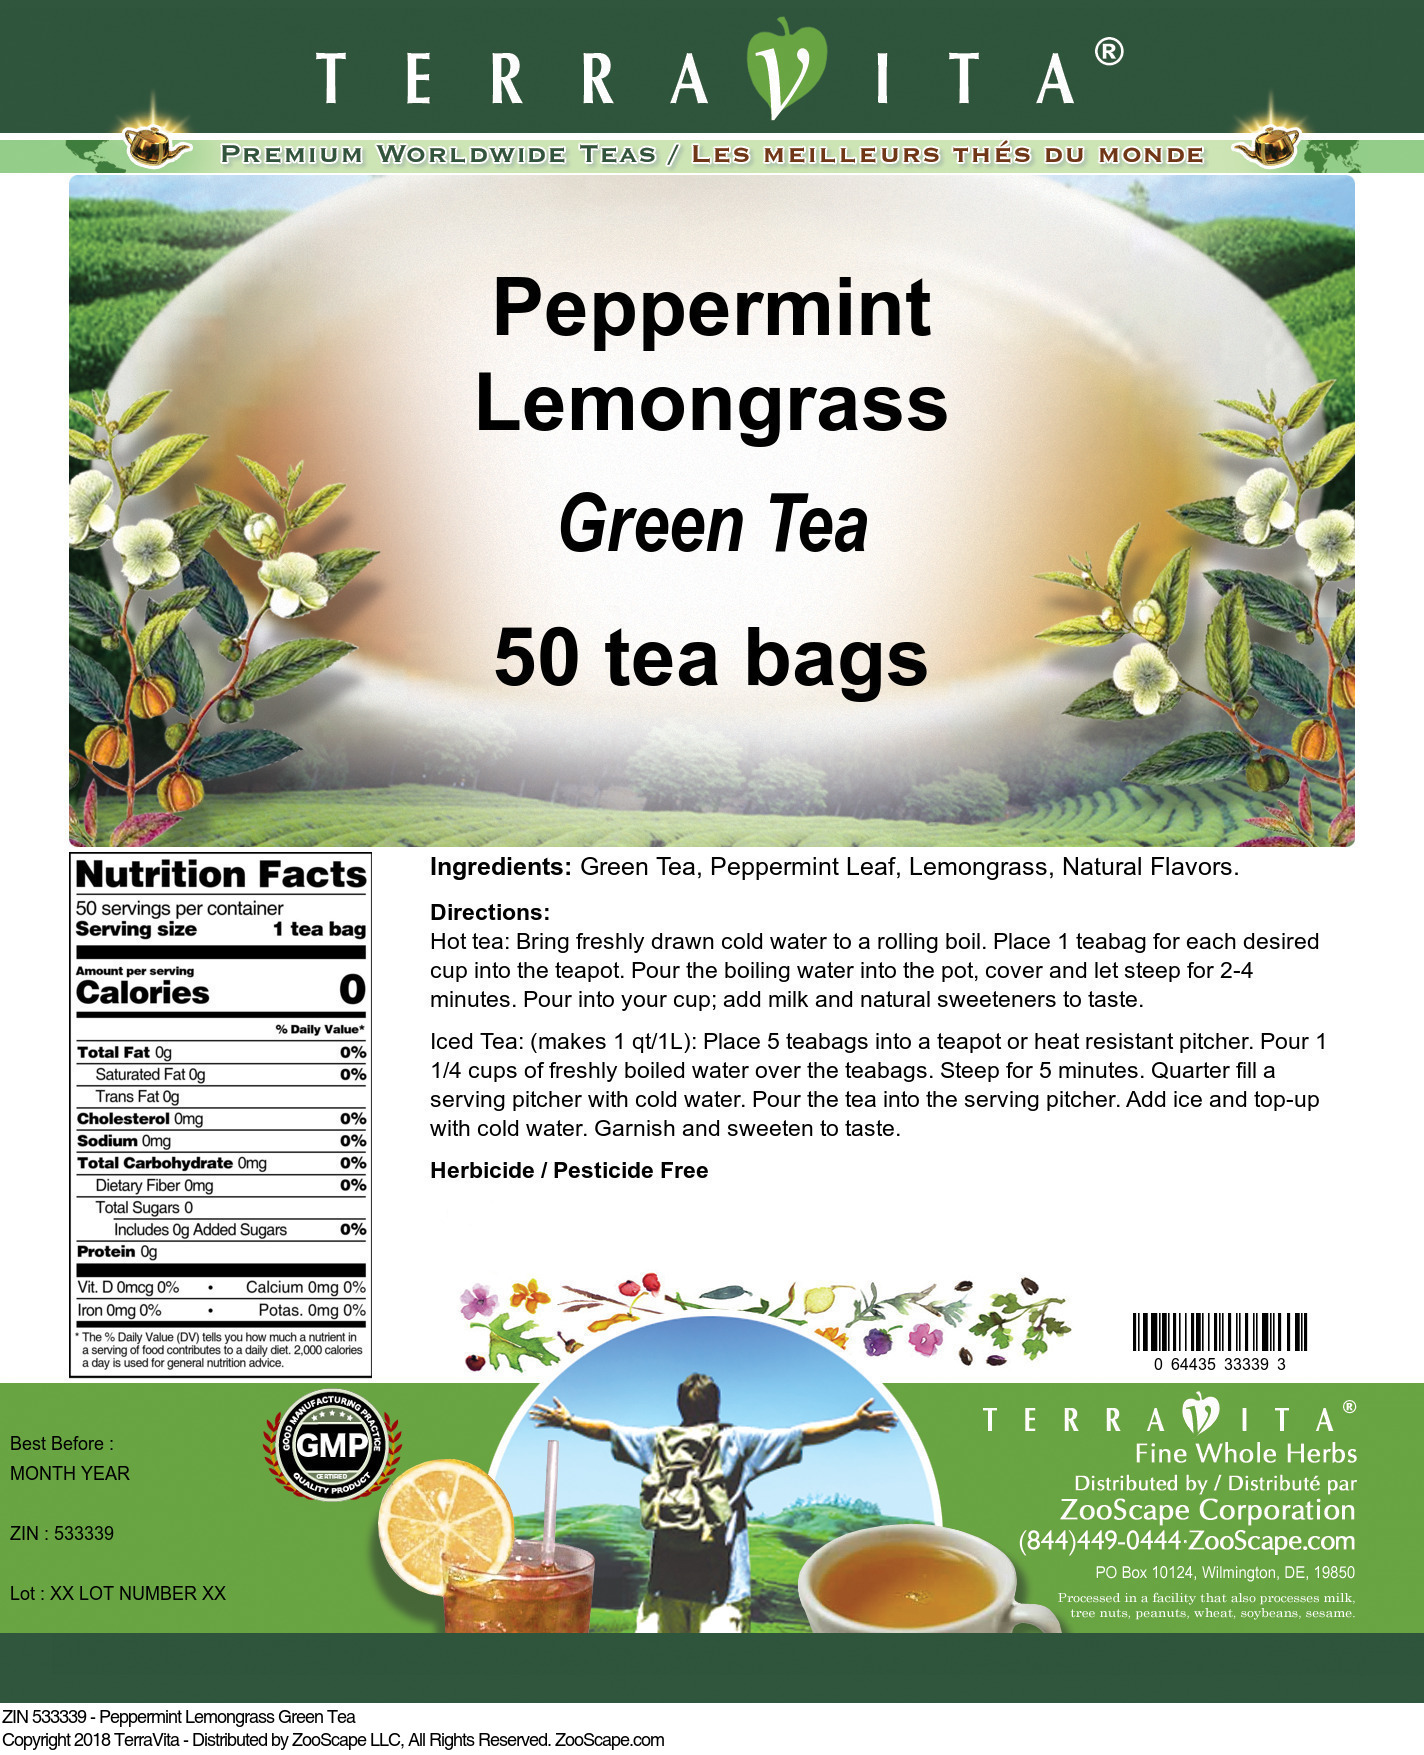 Peppermint Lemongrass Green Tea - Label